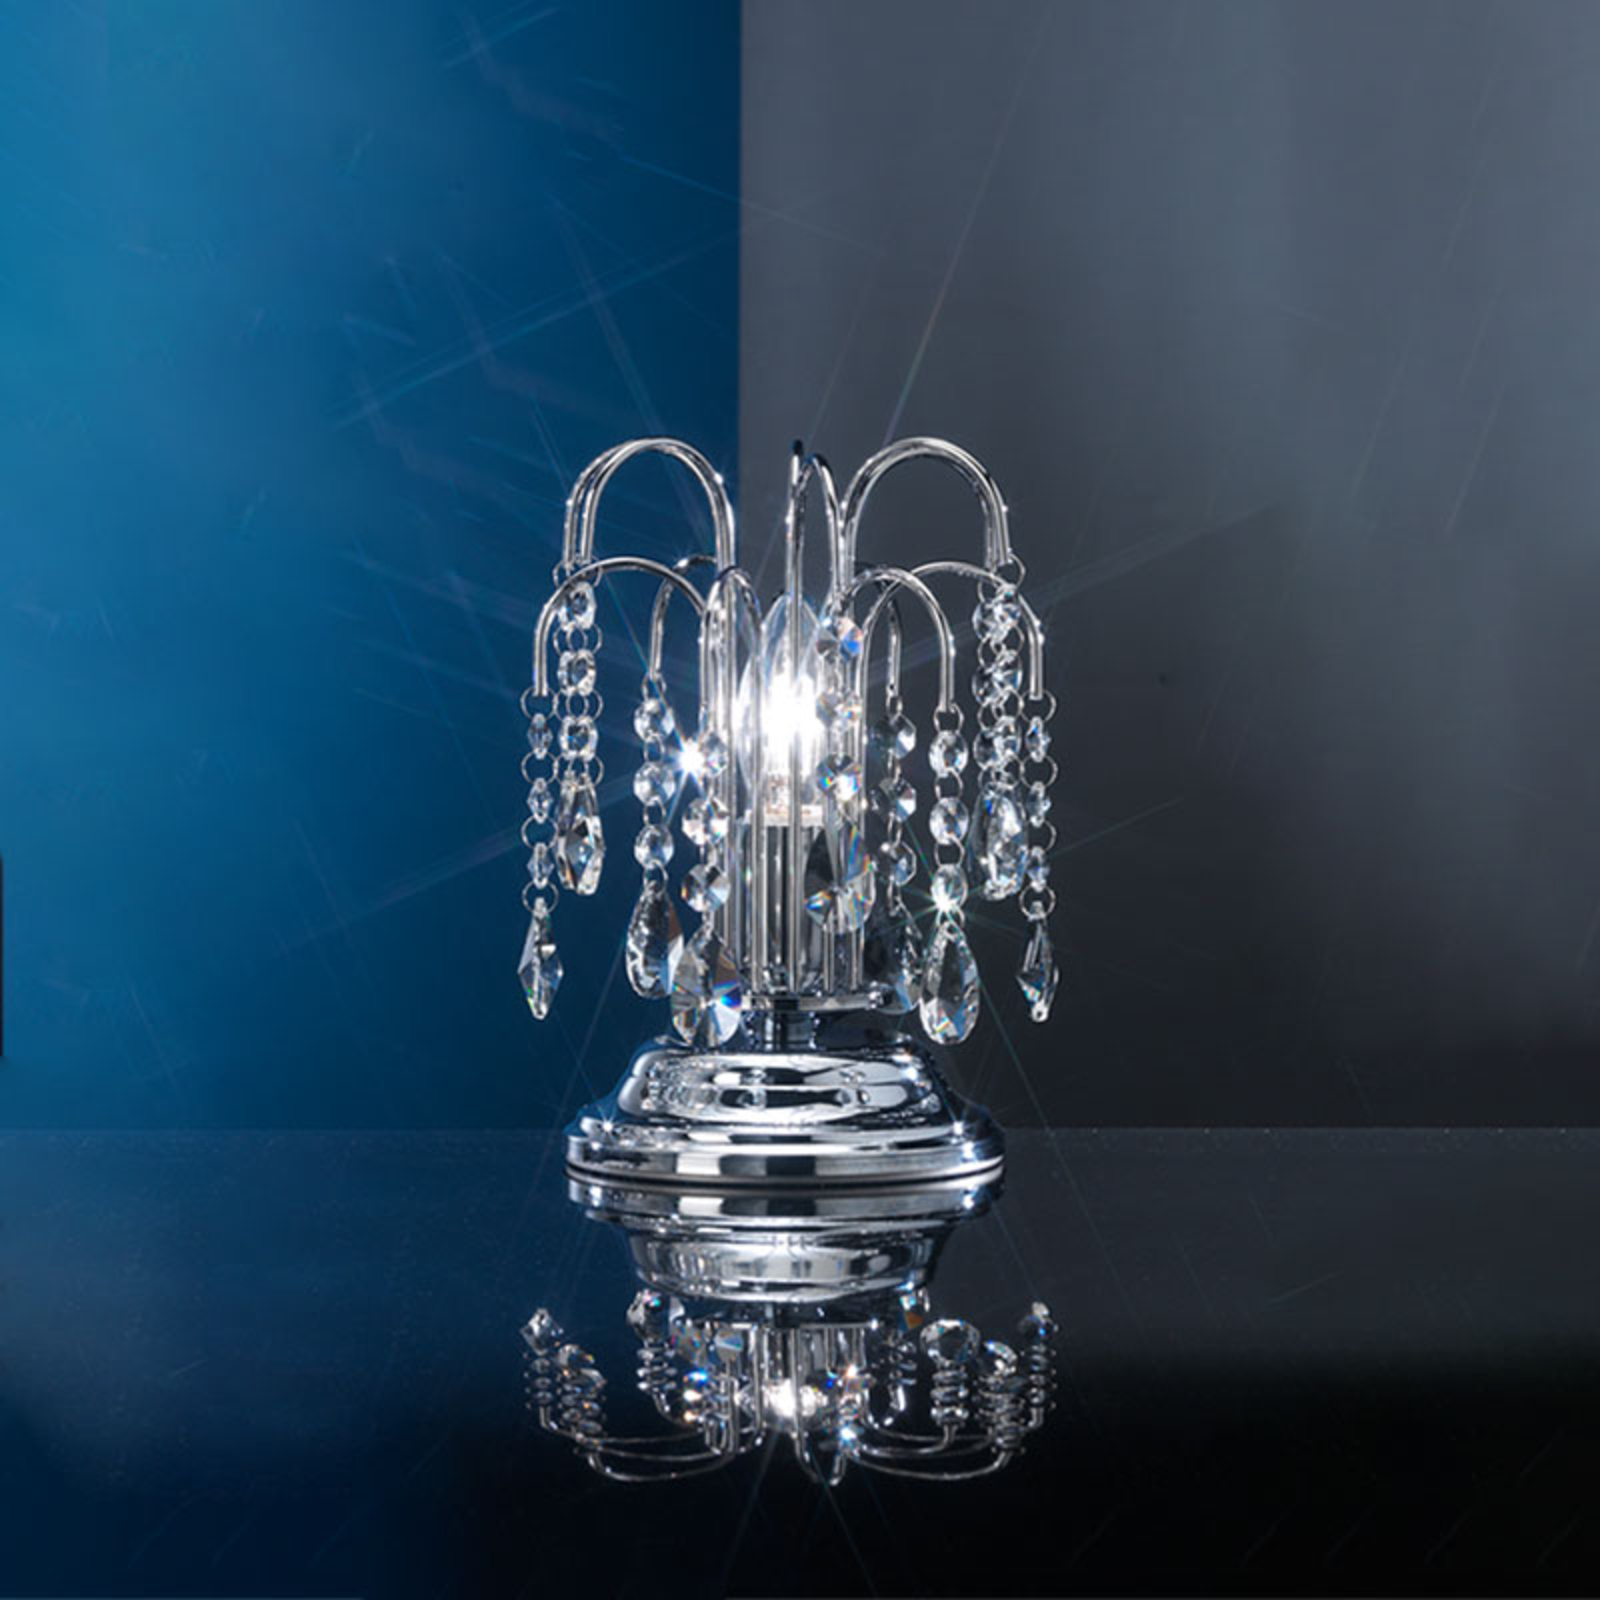 Pioggia bordlampe med krystallregn, 26 cm, krom